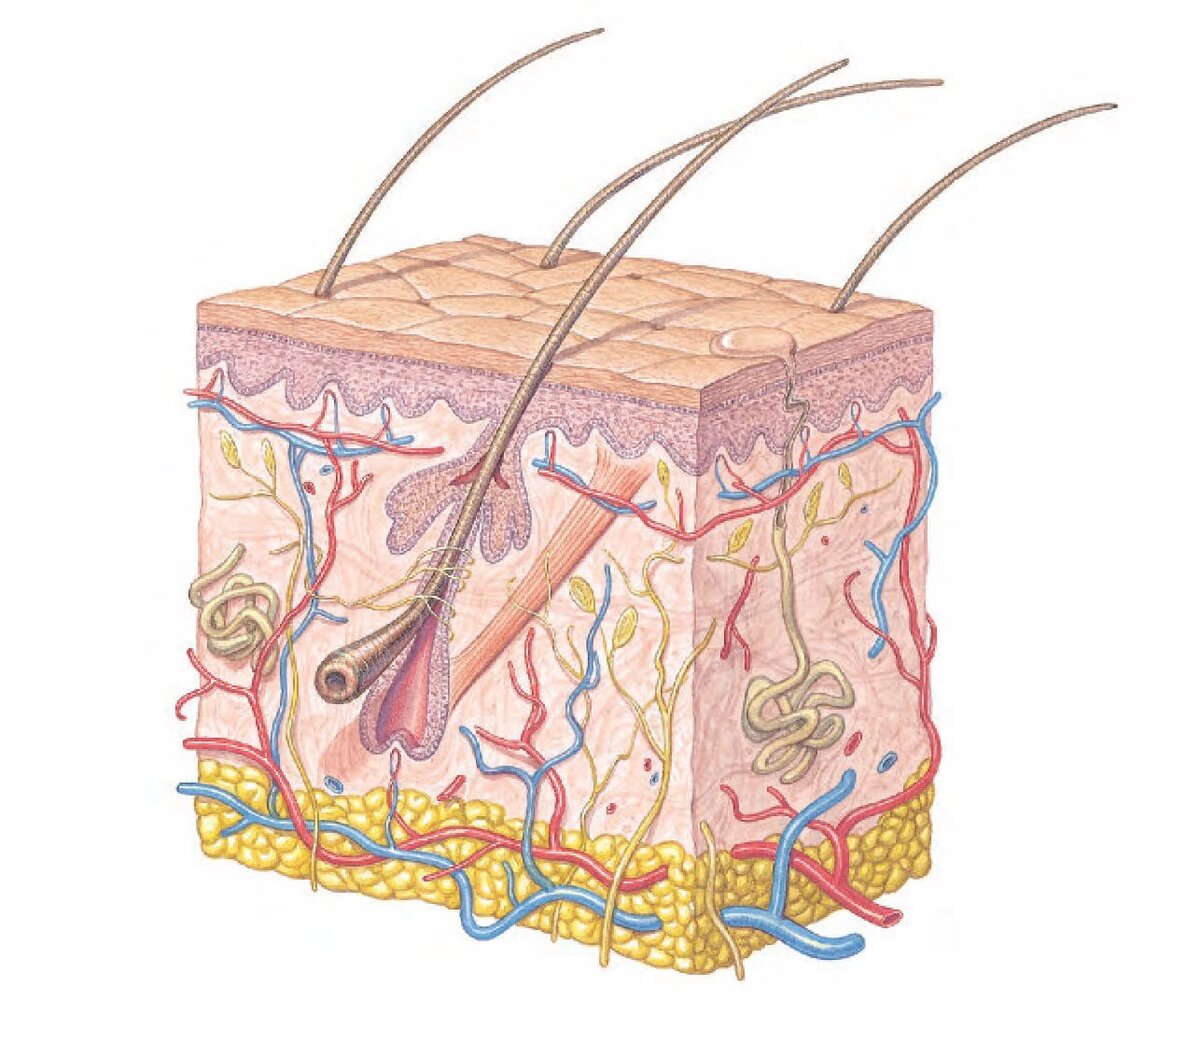 Схема строения нашей кожи. Средний ее слой дерма, представлен коллагеном, эластином и гликопротеидами. В каркасе, созданном этими белками присутствуют все структурные элементы кожи - потовые и сальные железы, волосяные луковицы, нервные окончания и кровеносные сосуды. 